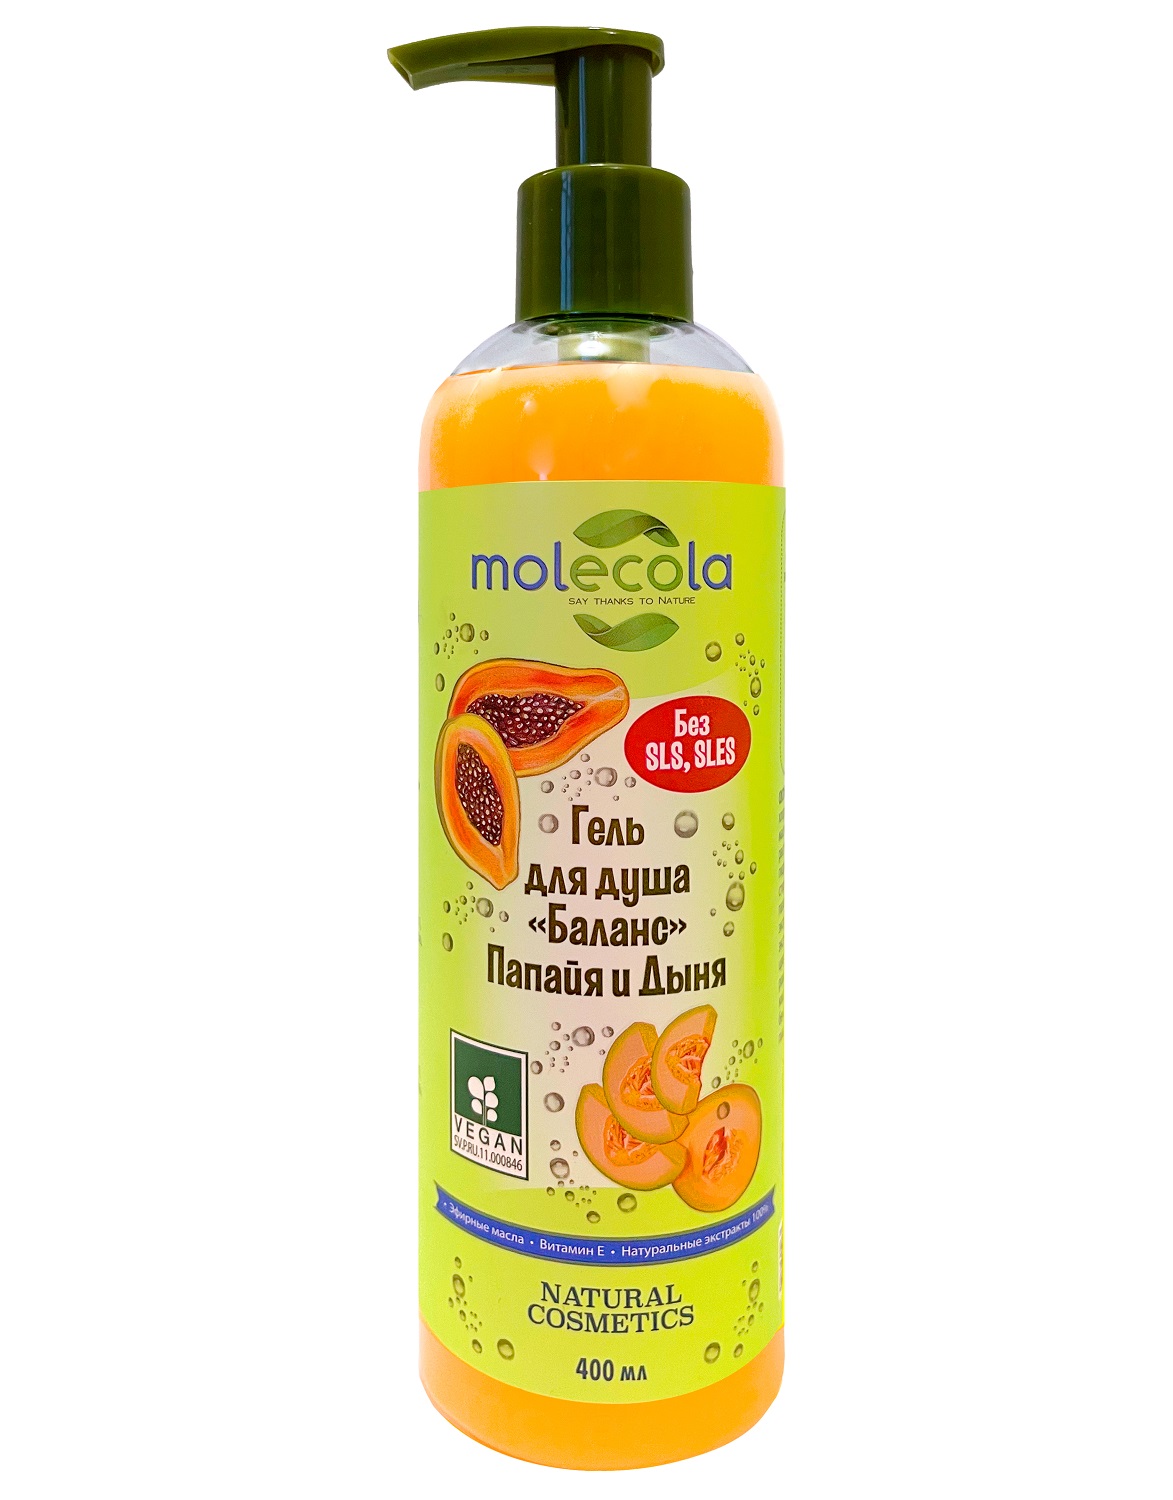 Molecola Гель для душа «Баланс» с папайей и дыней, 400 мл (Molecola, Для душа и ванны)